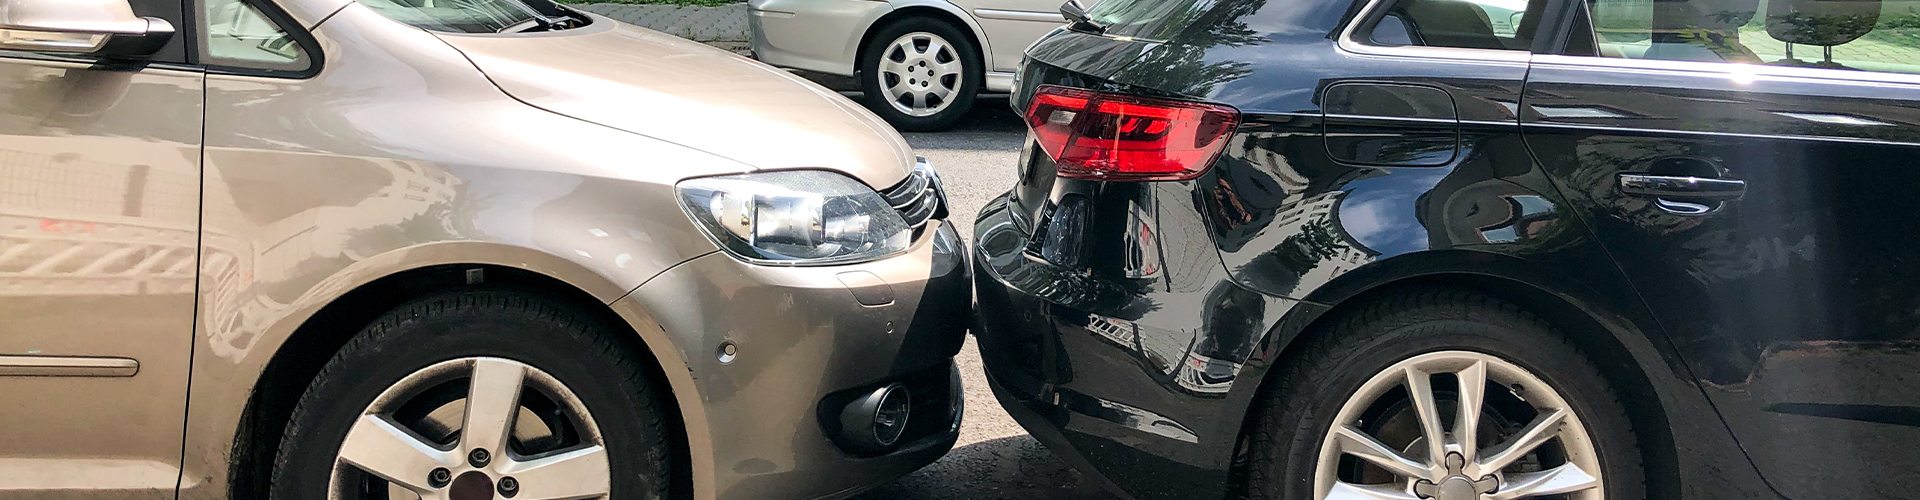 Bil parkerer - undgå parkeringsskade